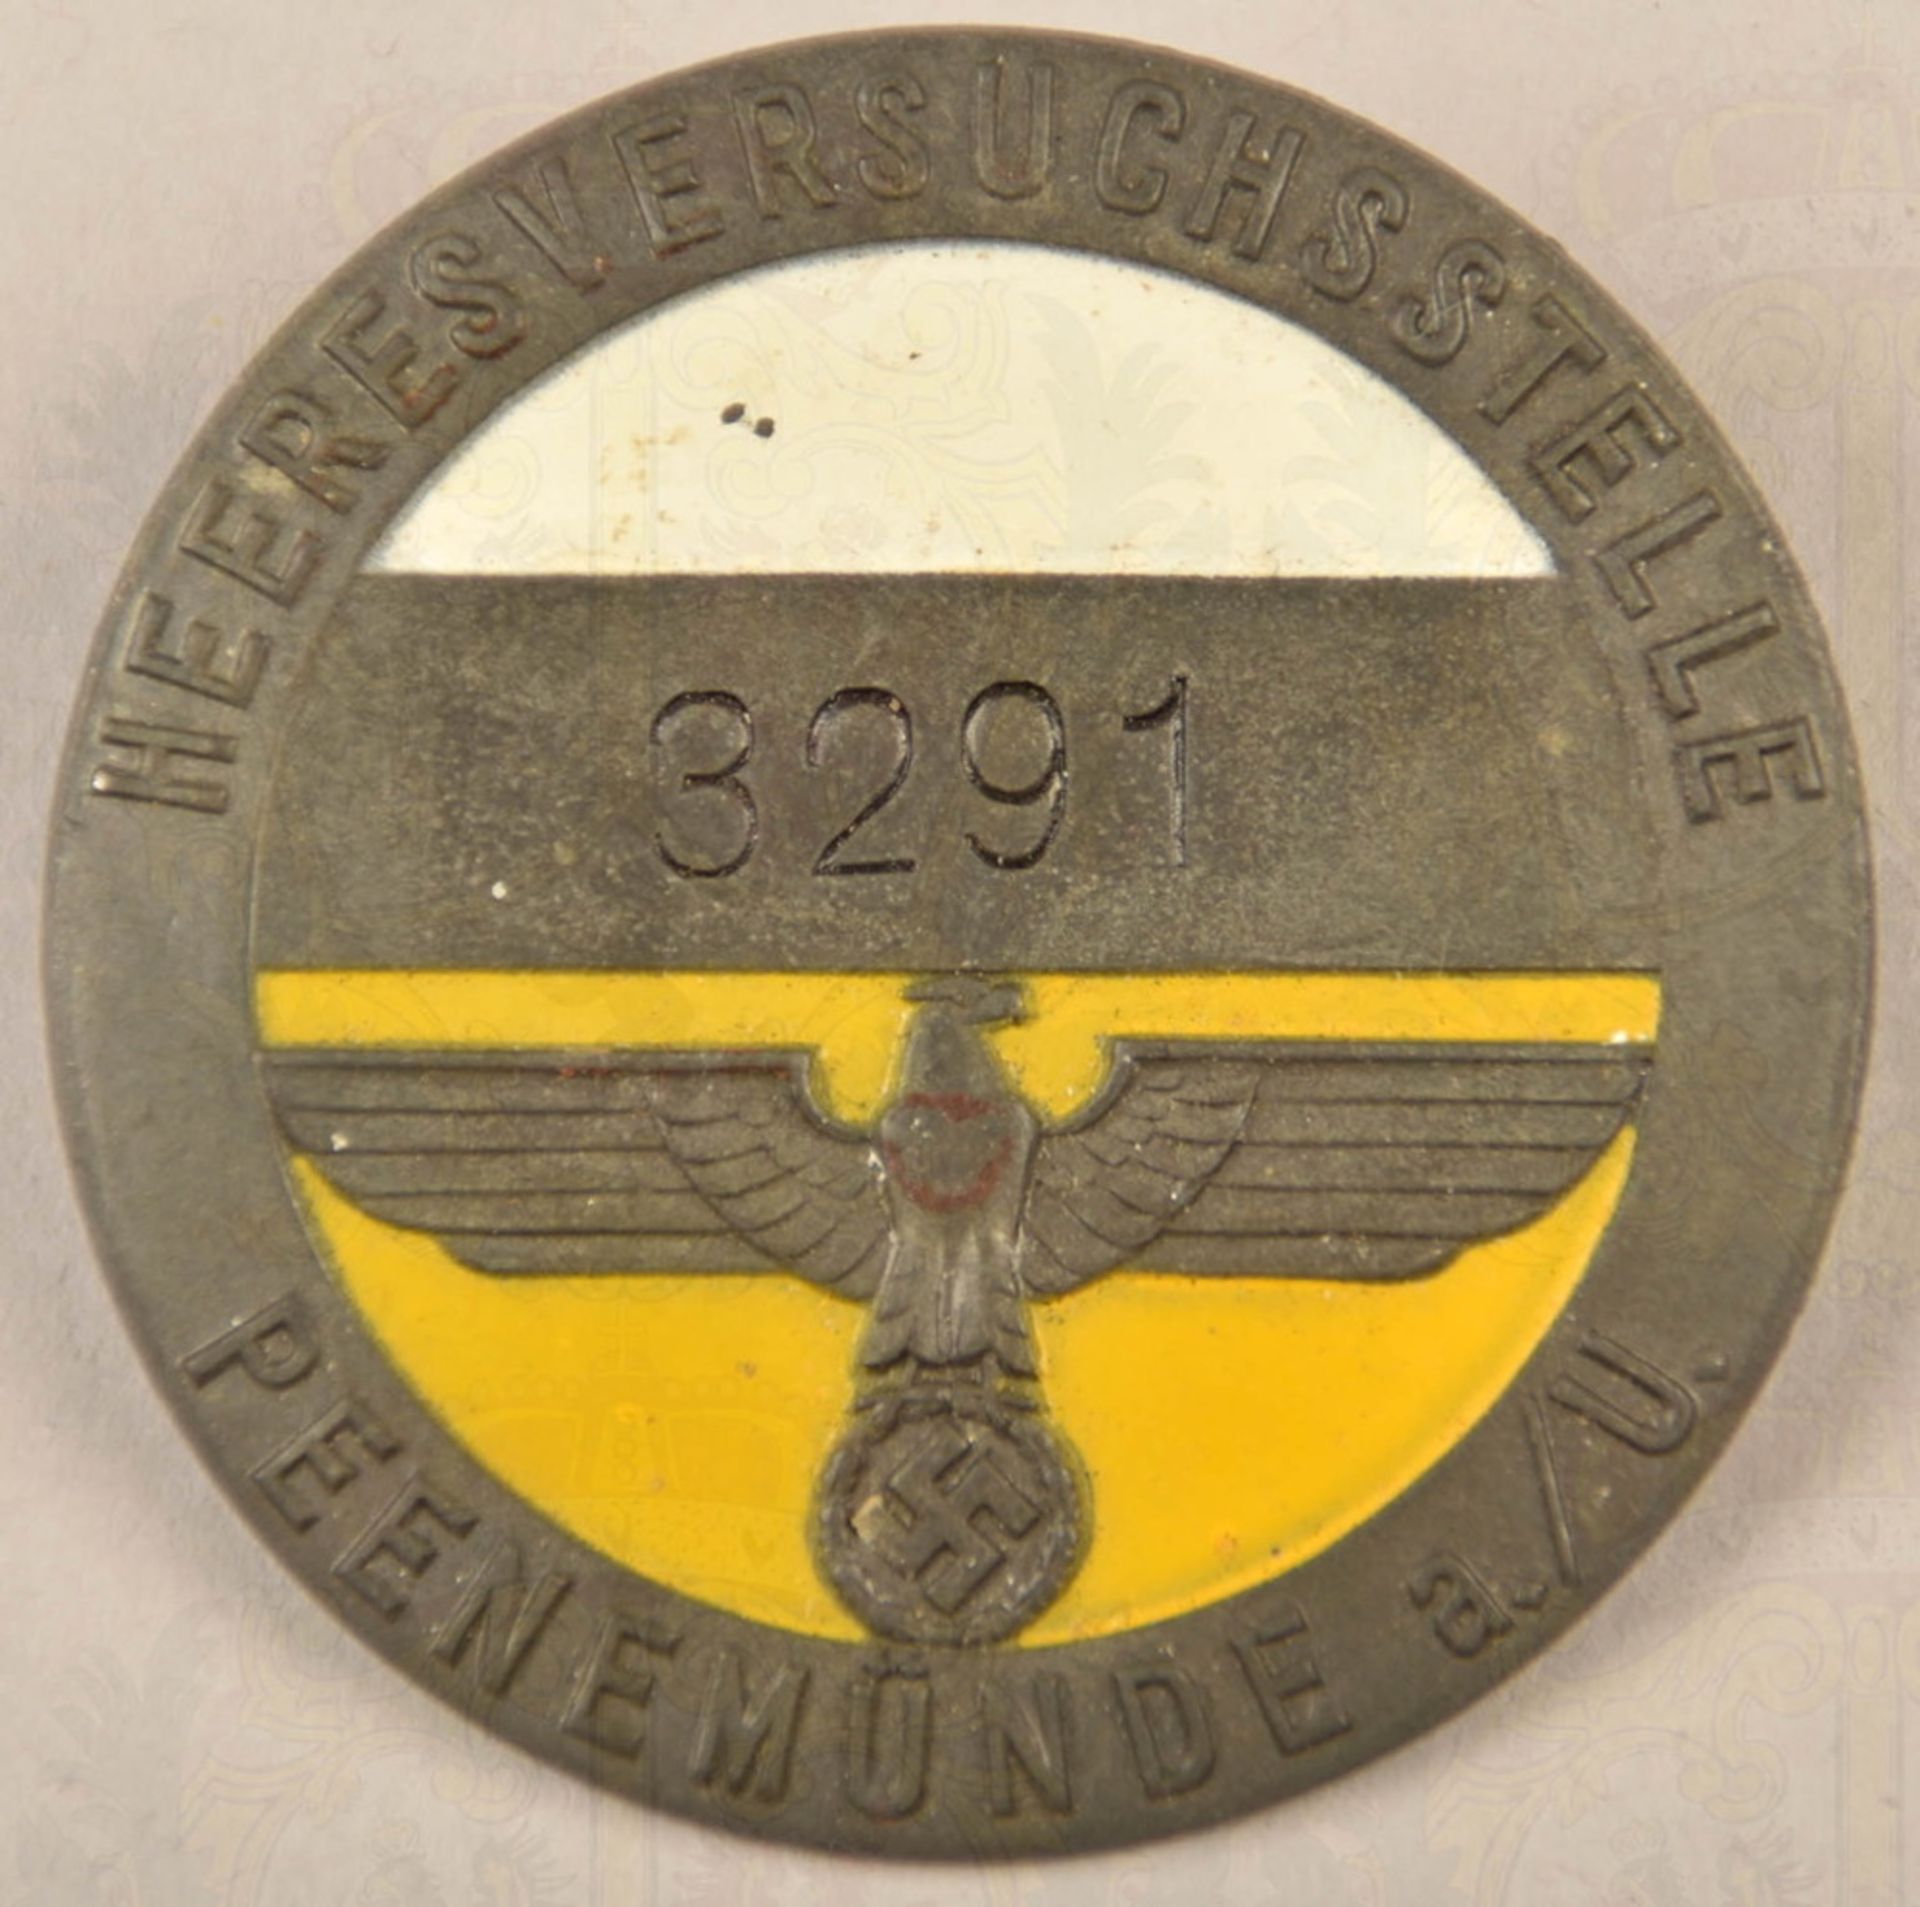 Service badge of the Peenemünde V2 rocket firing range - Image 2 of 3